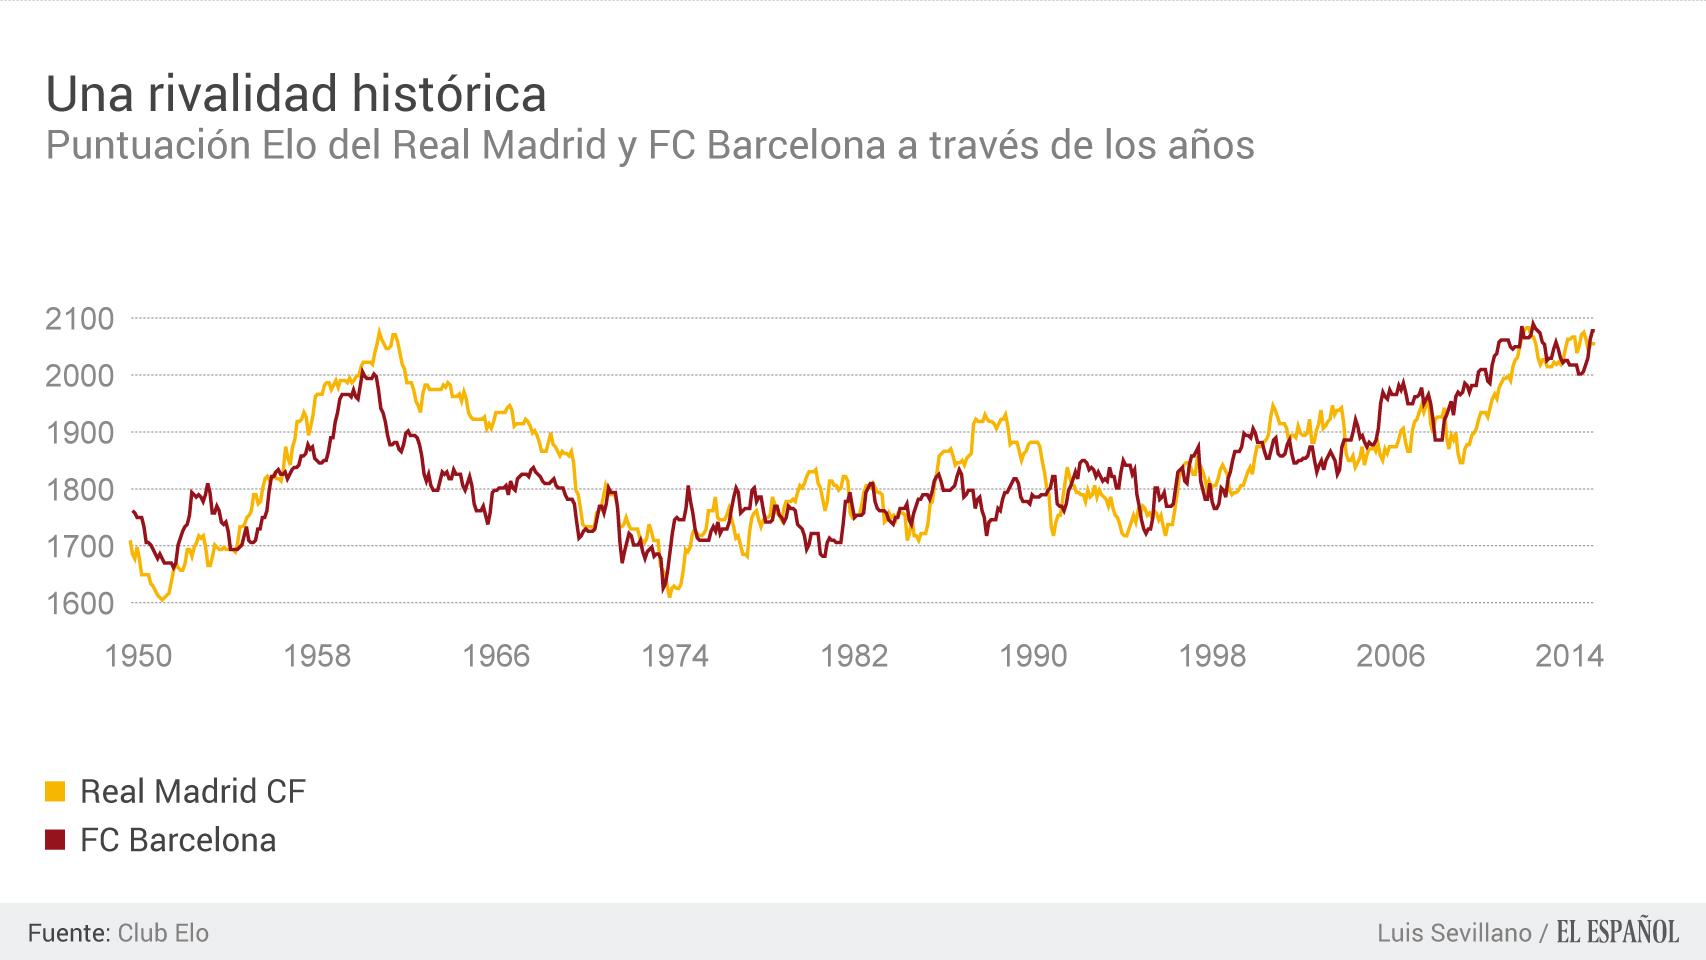 Puntuación Elo histórica de Real Madrid y FC Barcelona